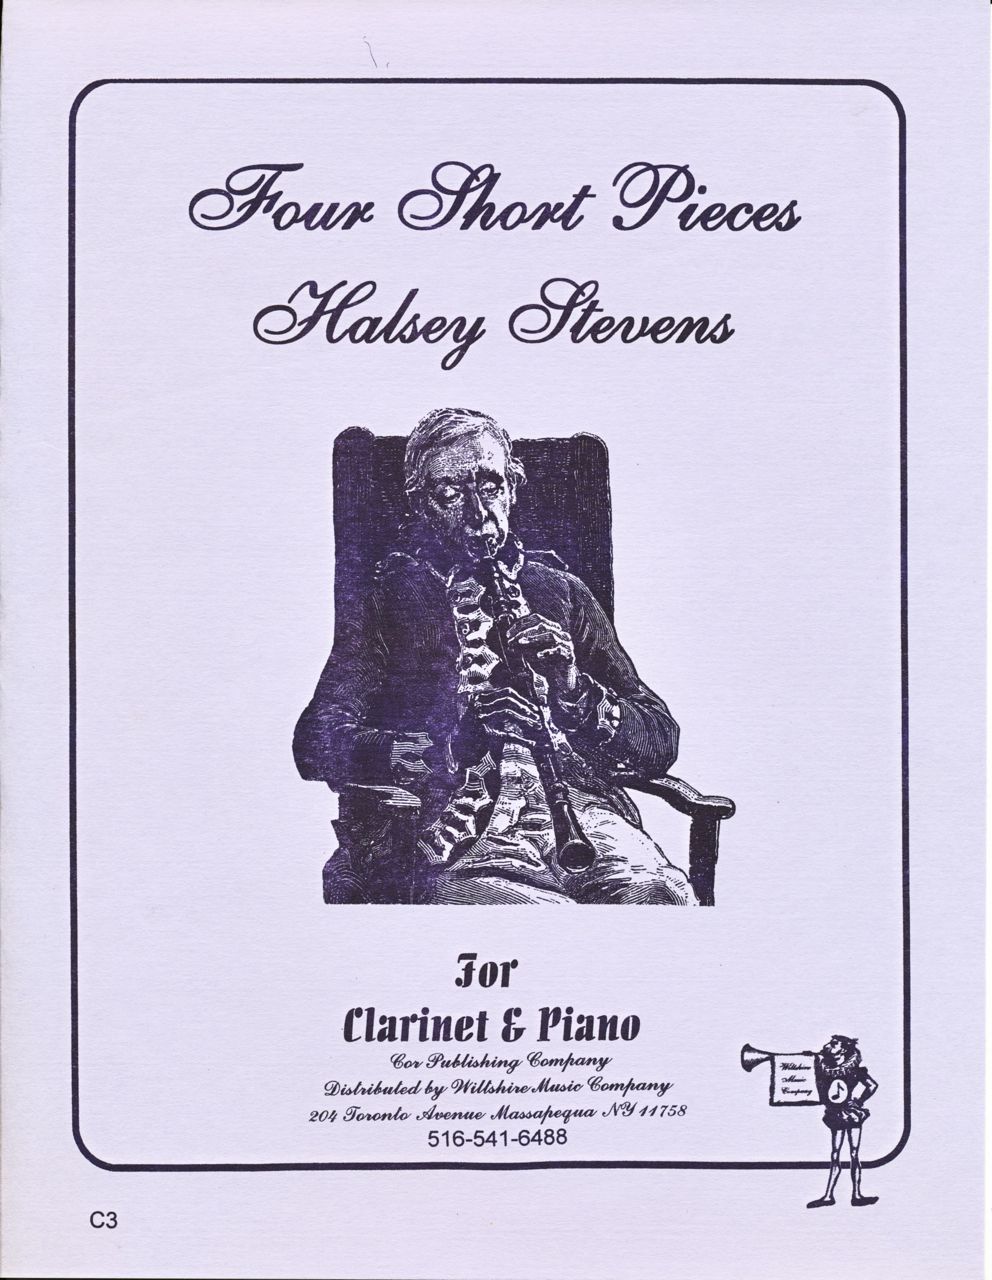 Four Short Pieces - STEVENS, HALSEY